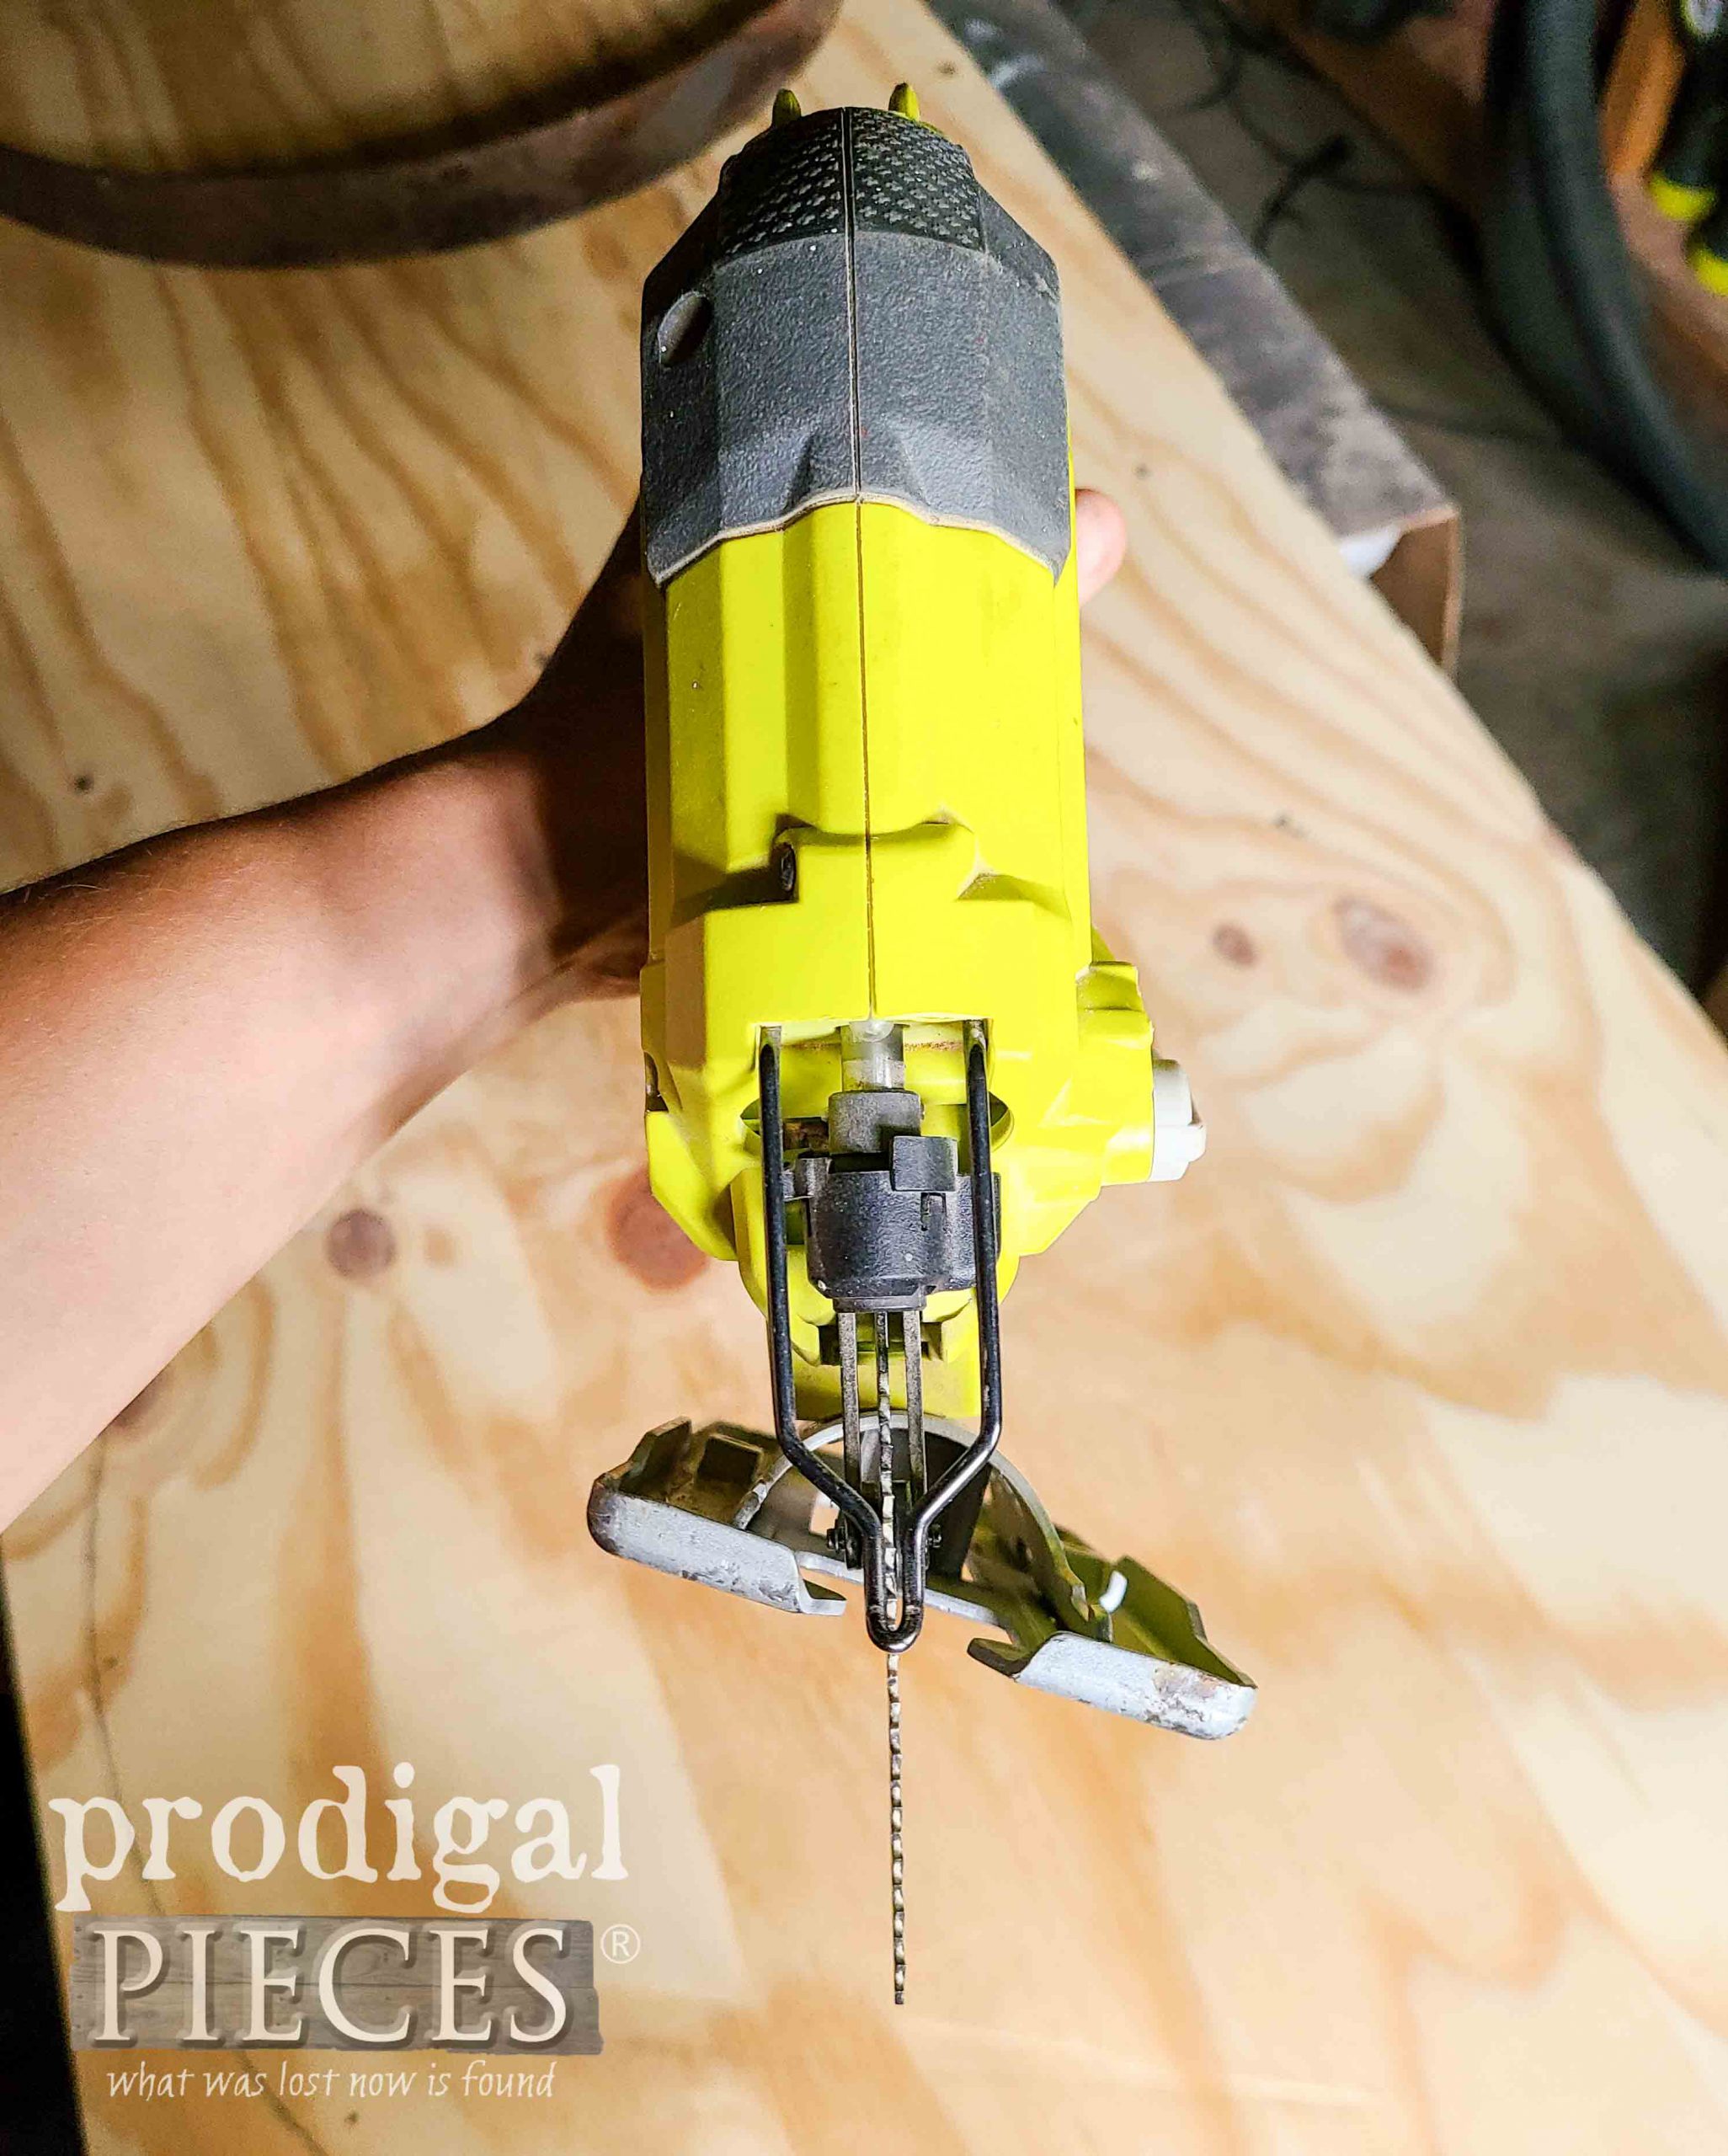 Angled Jig Saw Blade for Cutting | prodigalpieces.com #prodigalpieces